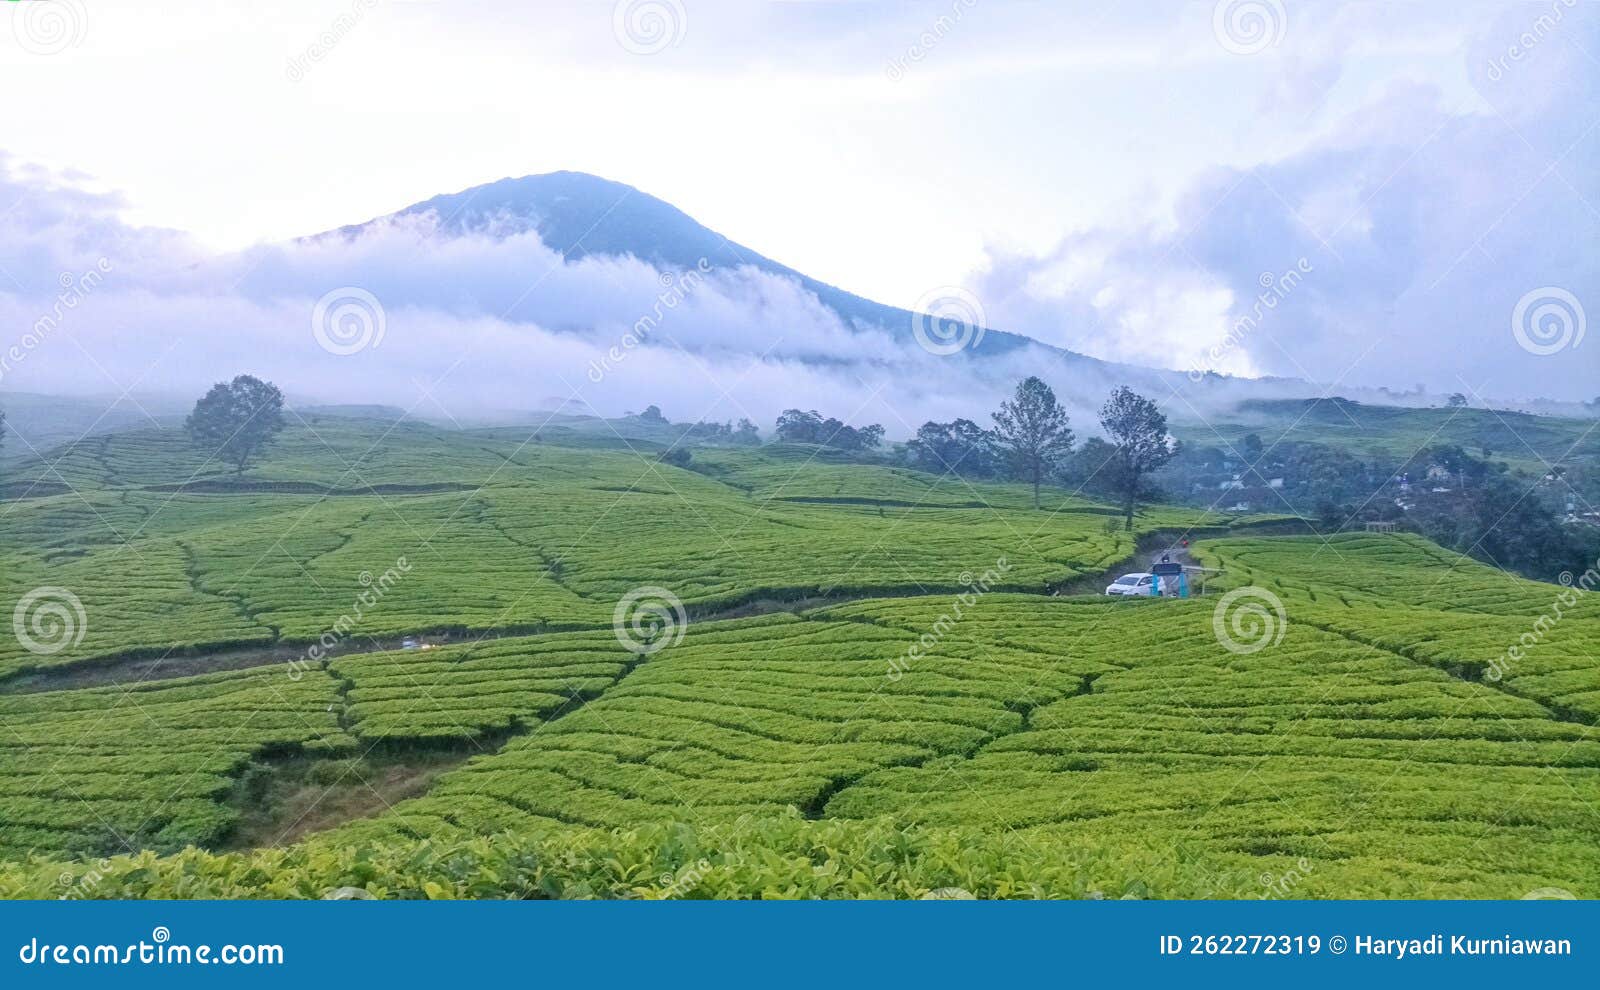 tea field on dempo mountain